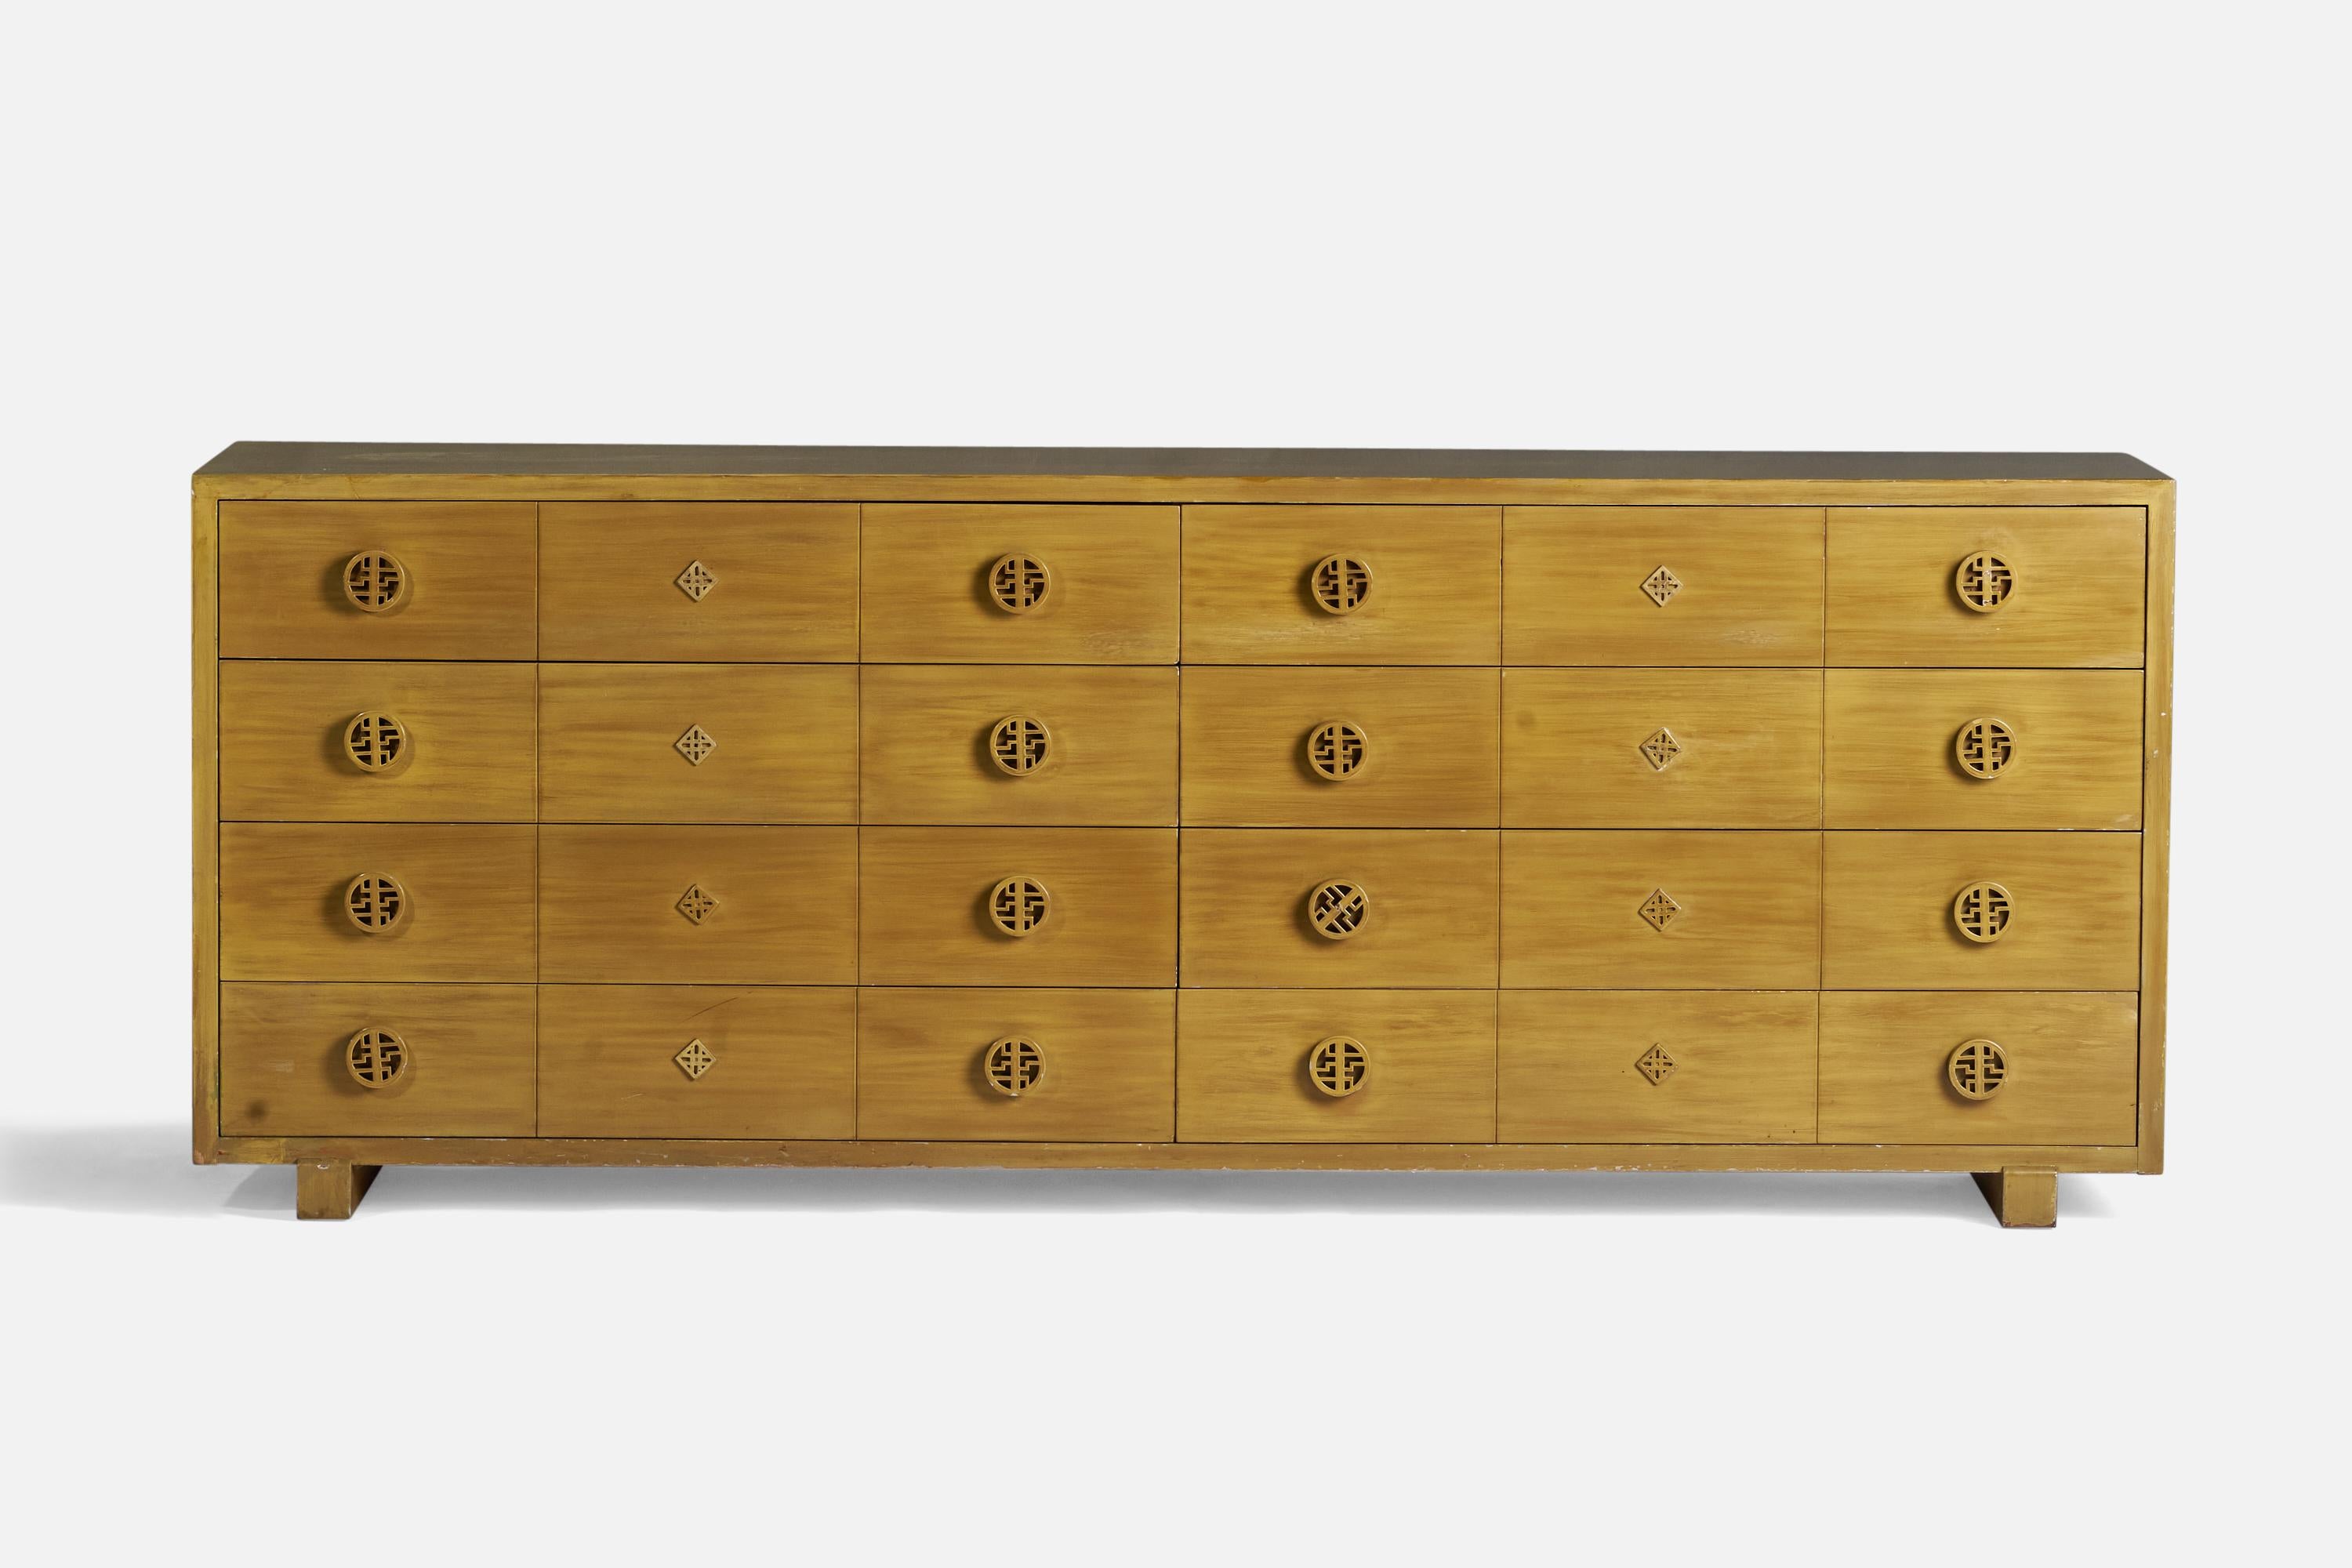 Commode en bois conçue et fabriquée par James Mont, États-Unis, vers les années 1940.

Originaire d'un intérieur de James Mont.